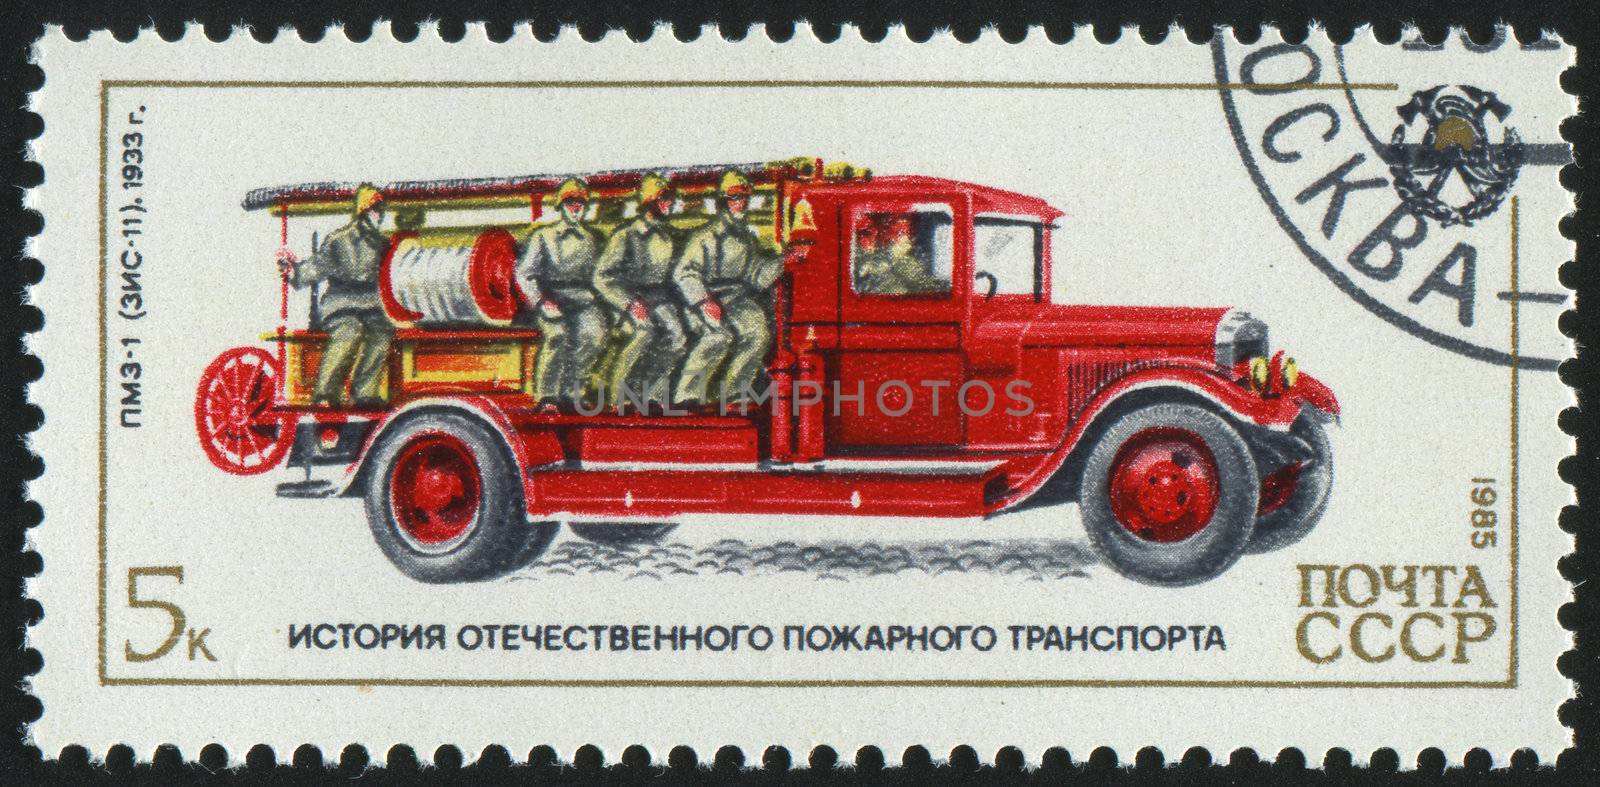 RUSSIA - CIRCA 1985: stamp printed by Russia, shows retro firetruck, circa 1985.